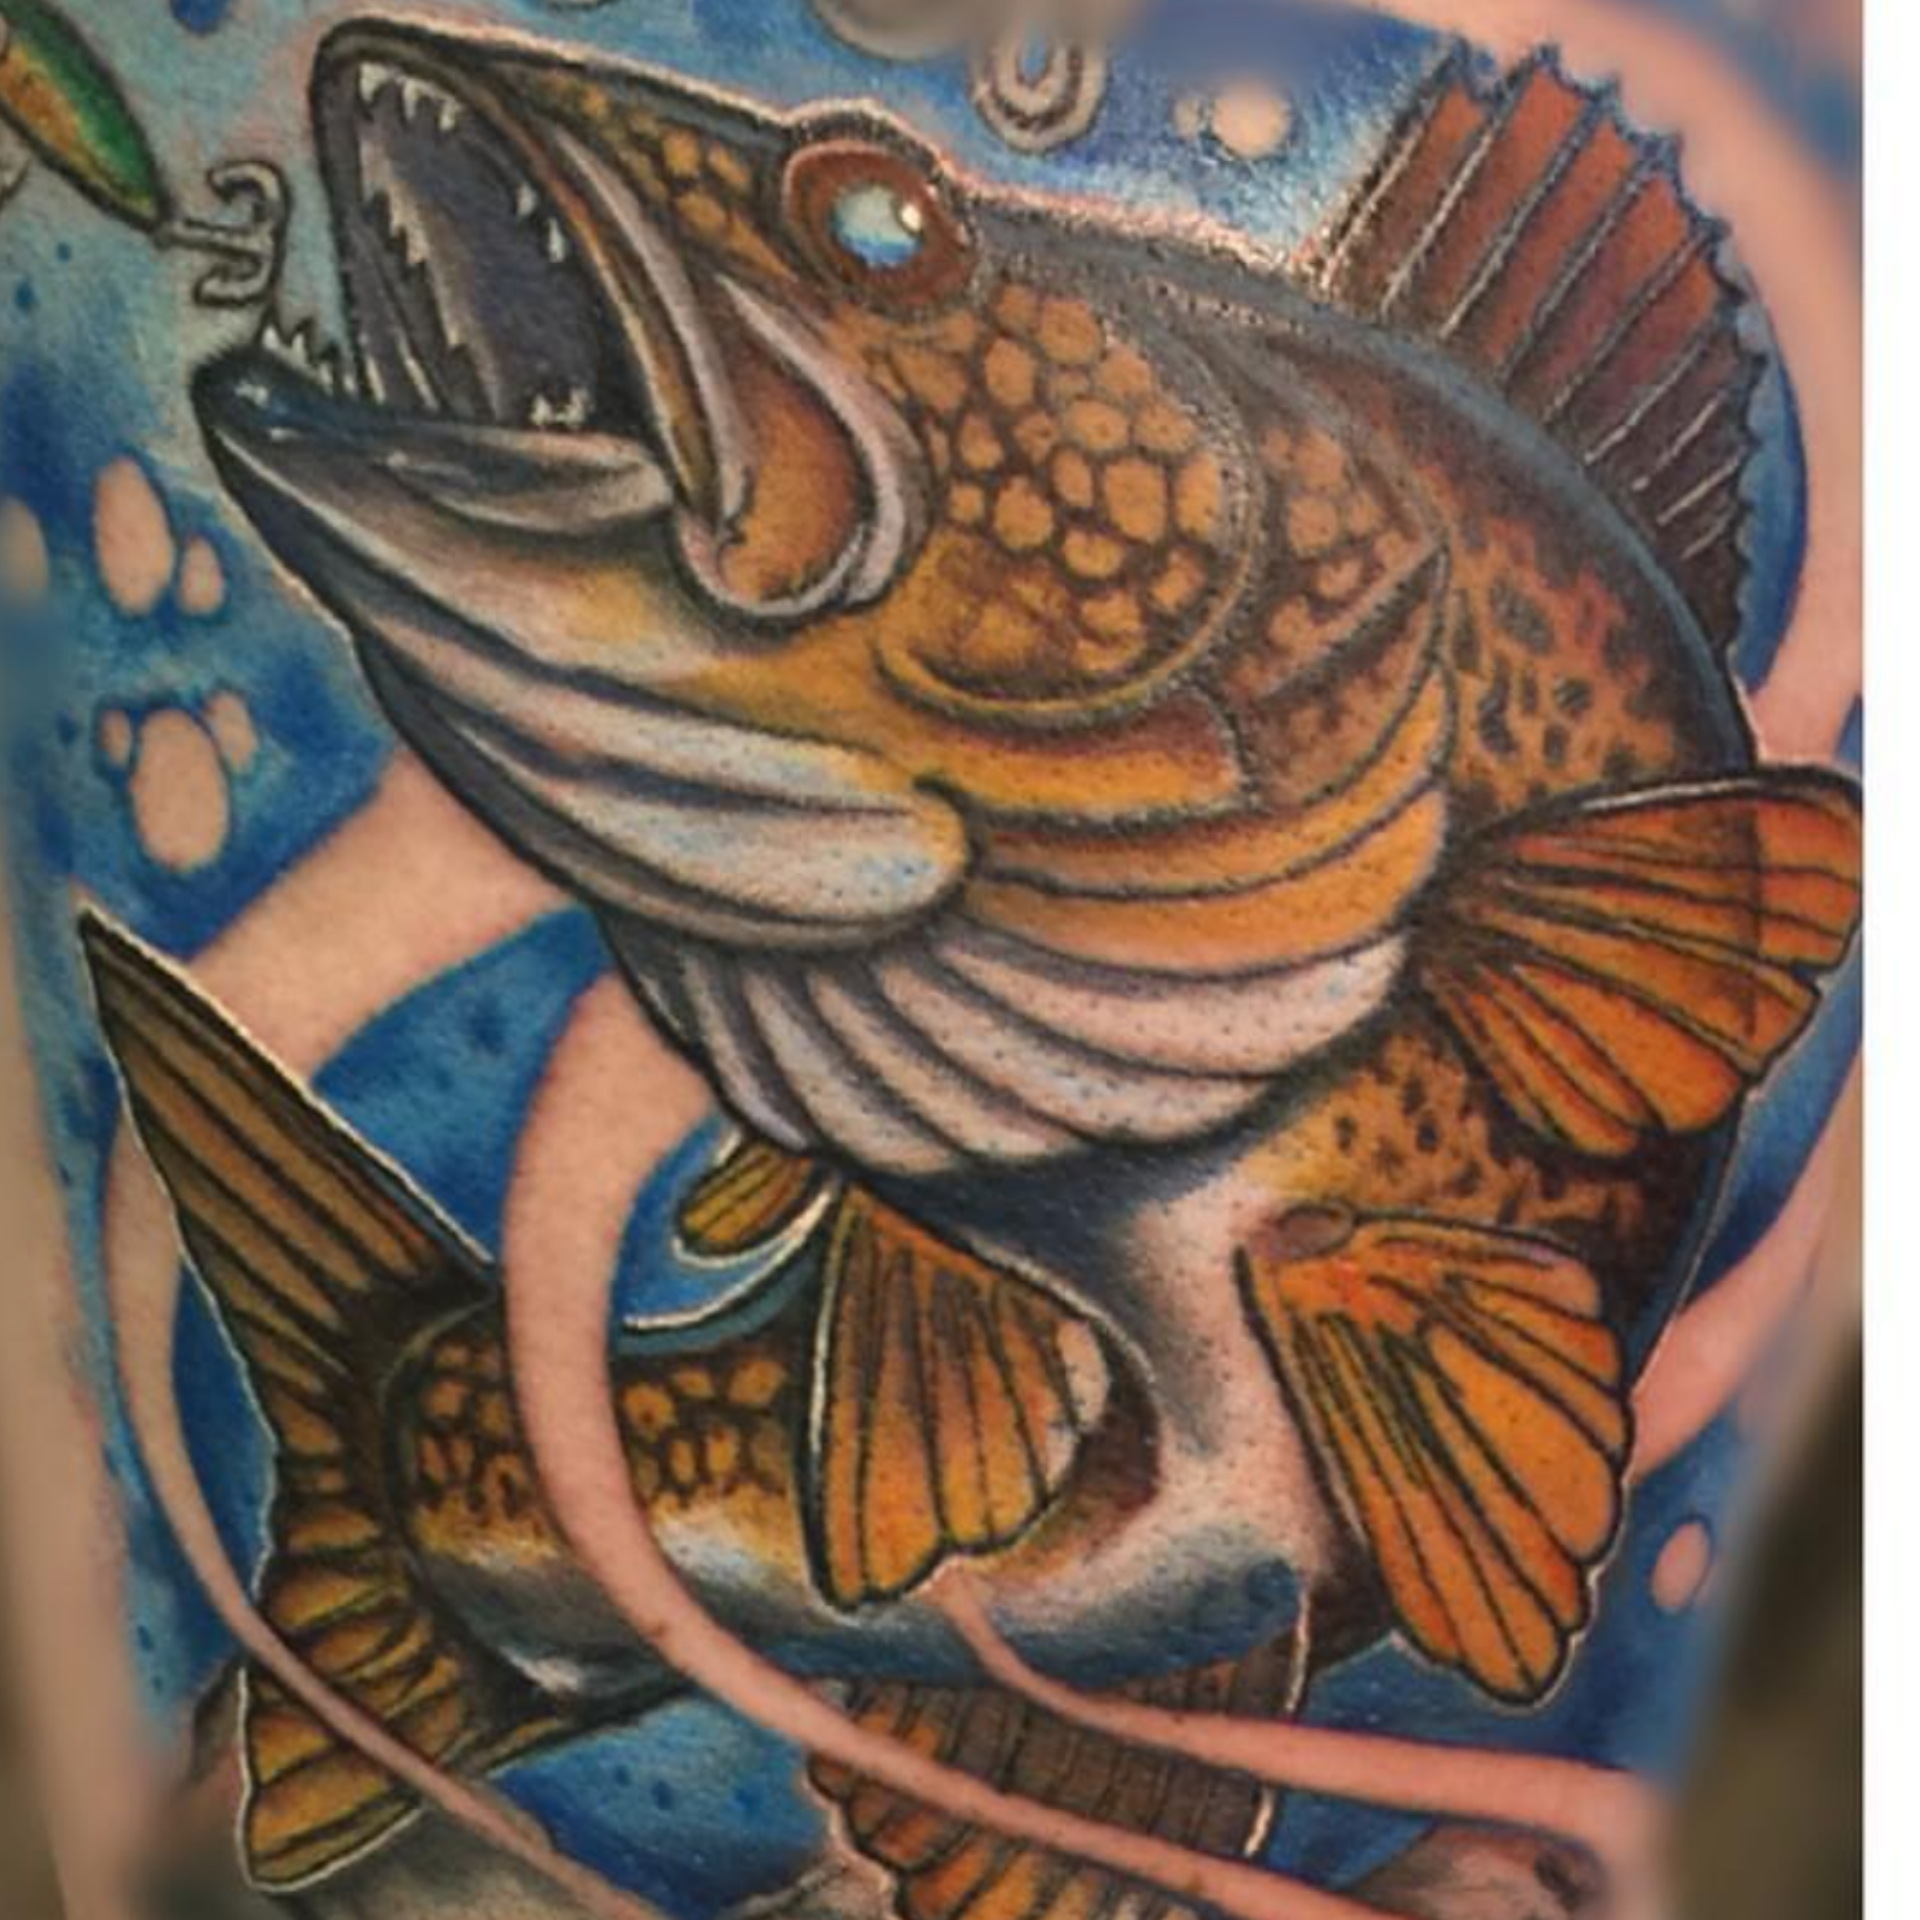 Chris Kopera Tattoo 2019 Okanagan Tattoo Show & Brewfest Artist